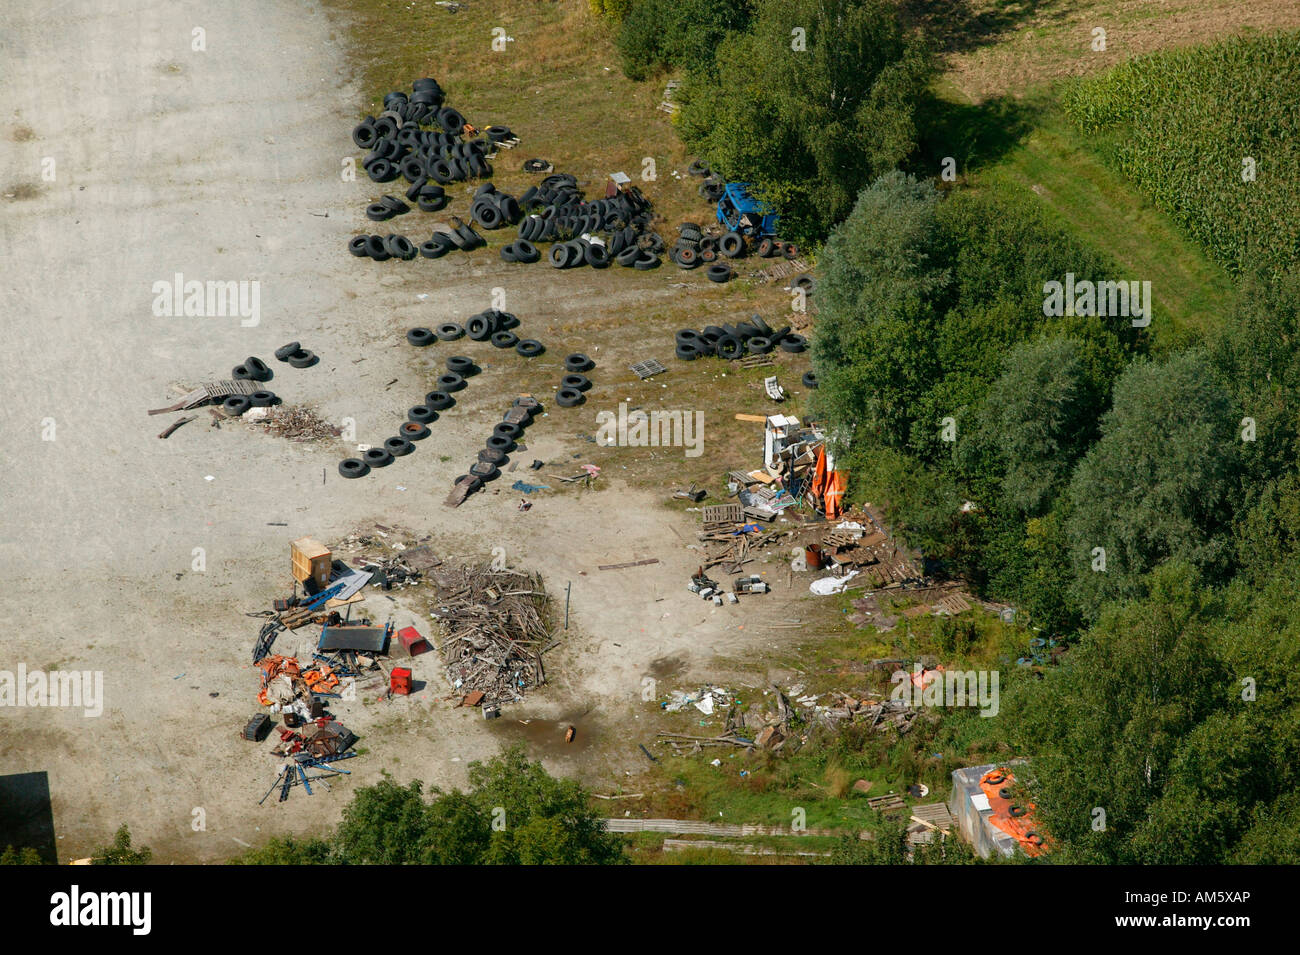 Sitio de disposición de residuos ilegales, Alemania Foto de stock